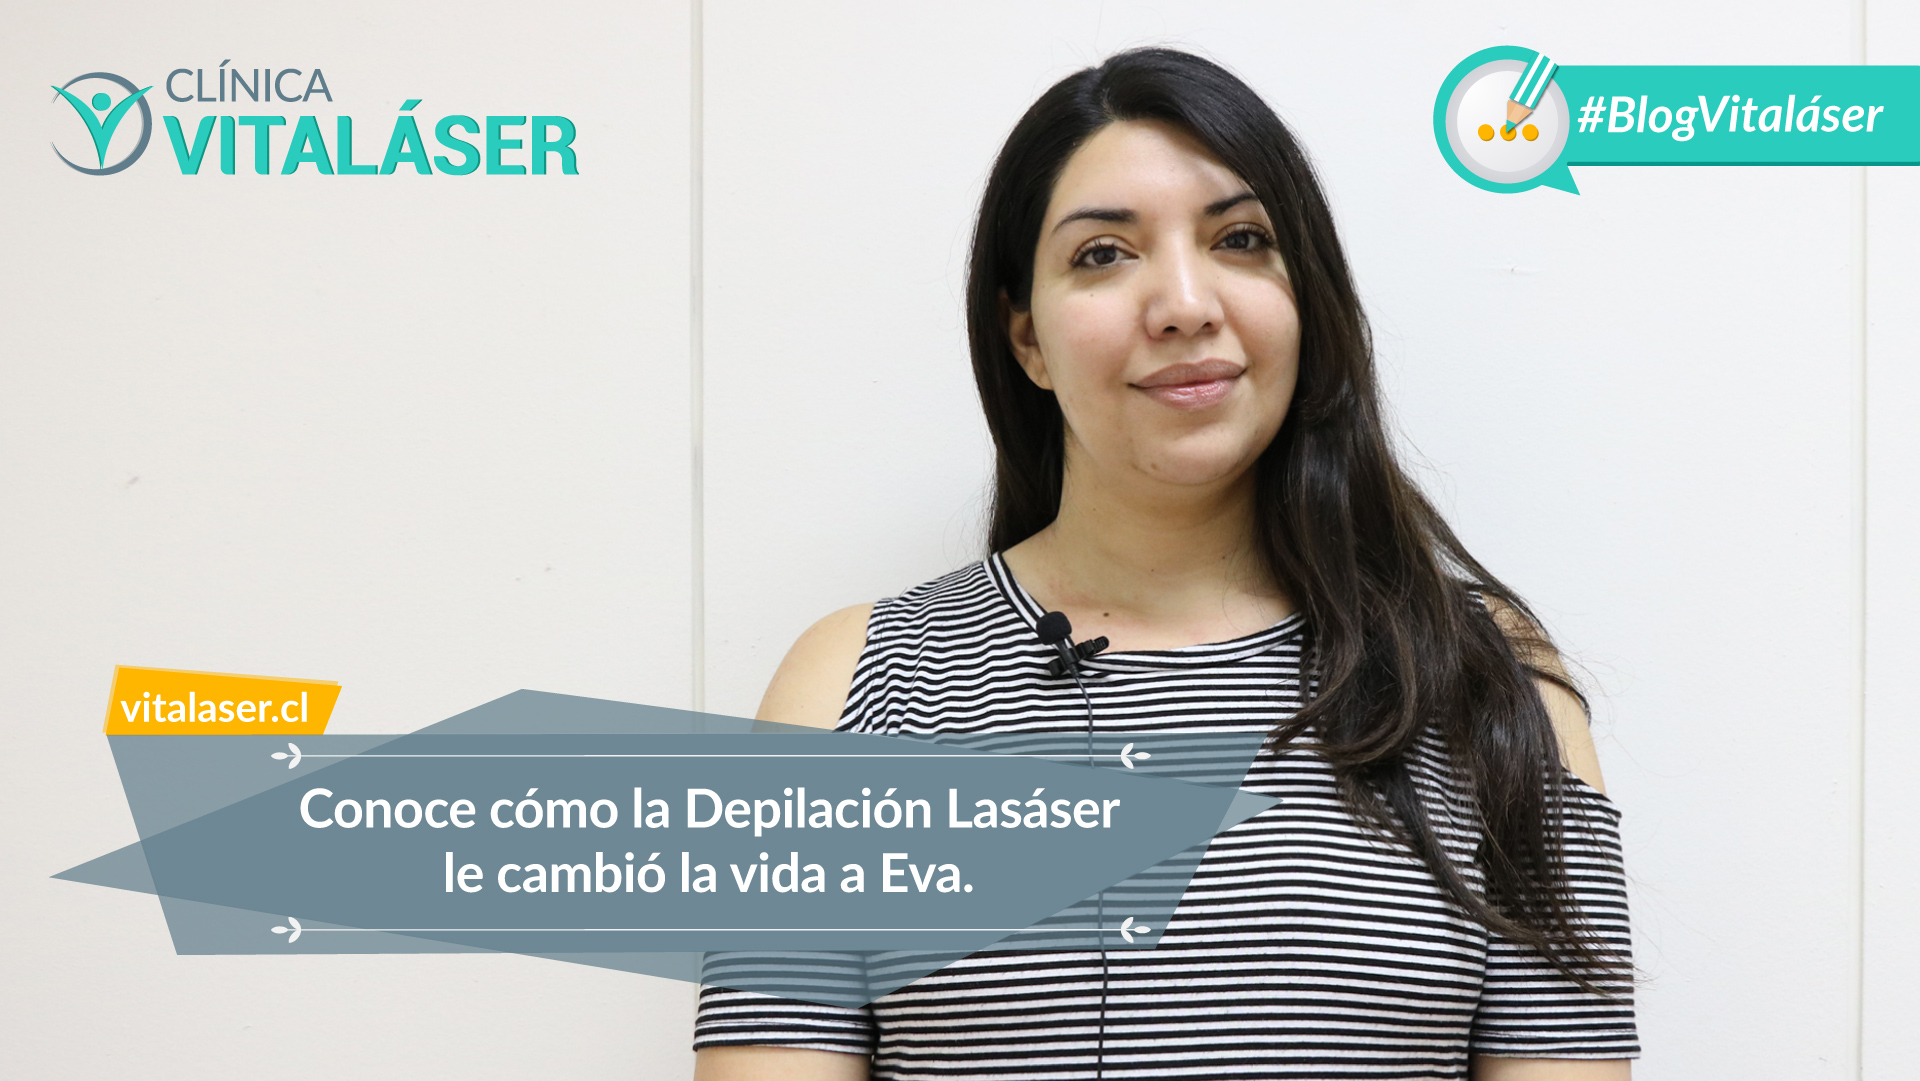 Testimonio Depilación Láser: “Vitaláser marca la diferencia en lo referente a Depilación Láser en Santiago”